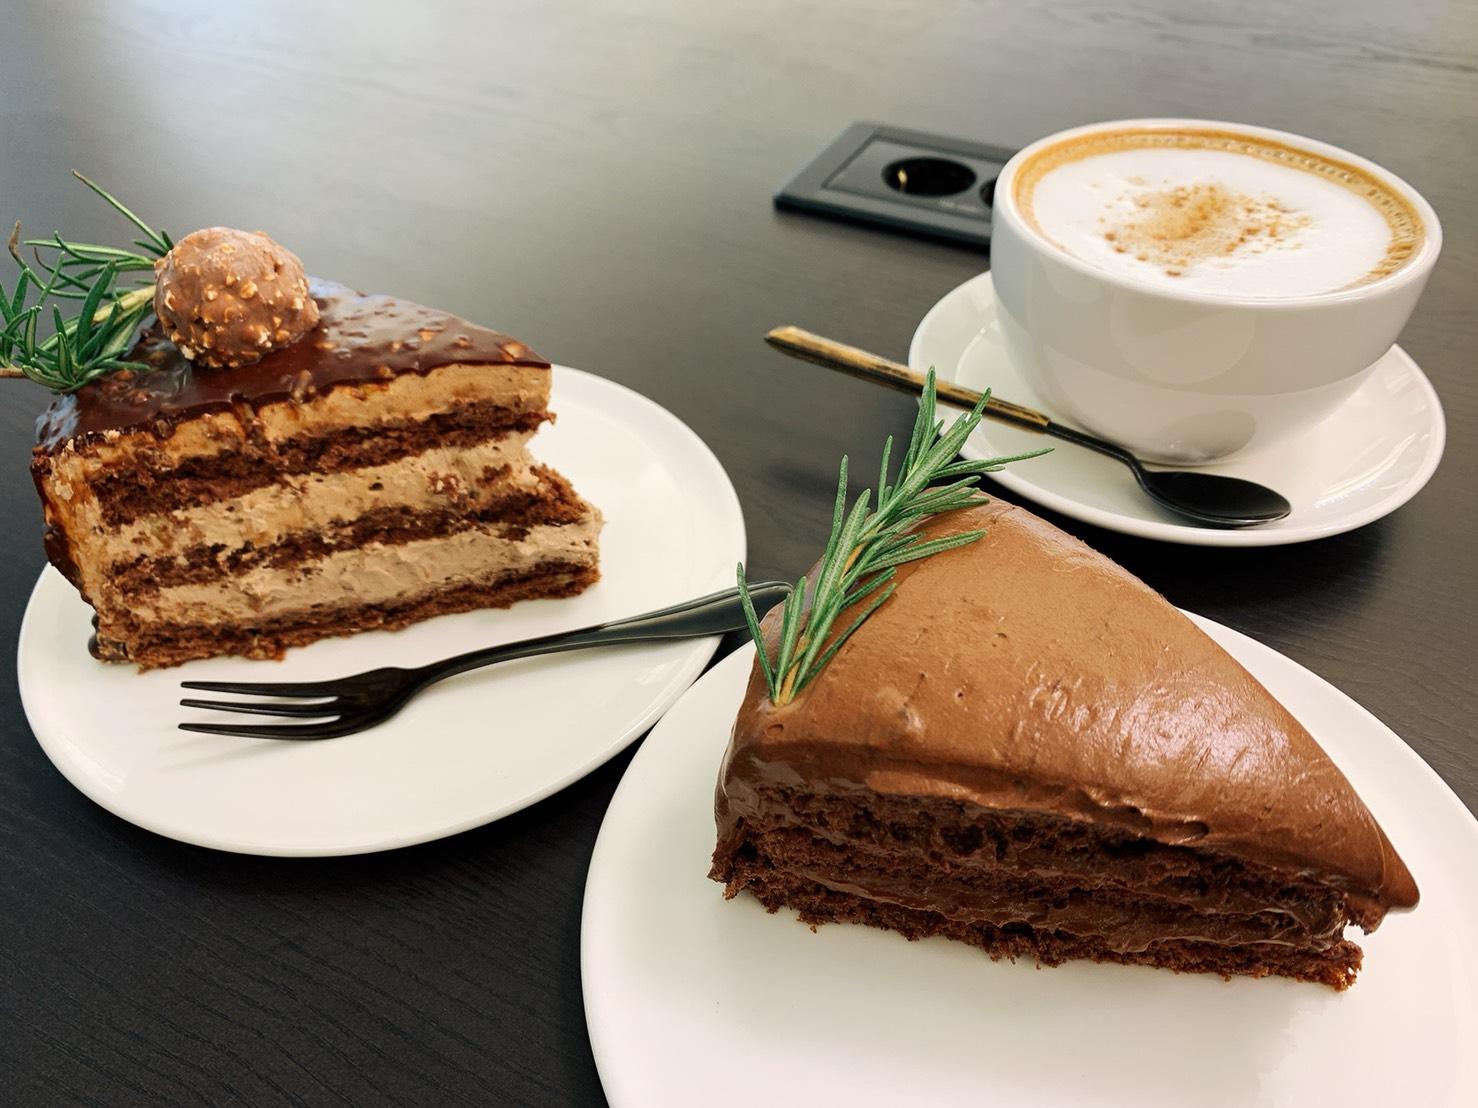 페레로로쉐 金沙巧克力蛋糕(左)、마틸다濃郁巧克力蛋糕(右)